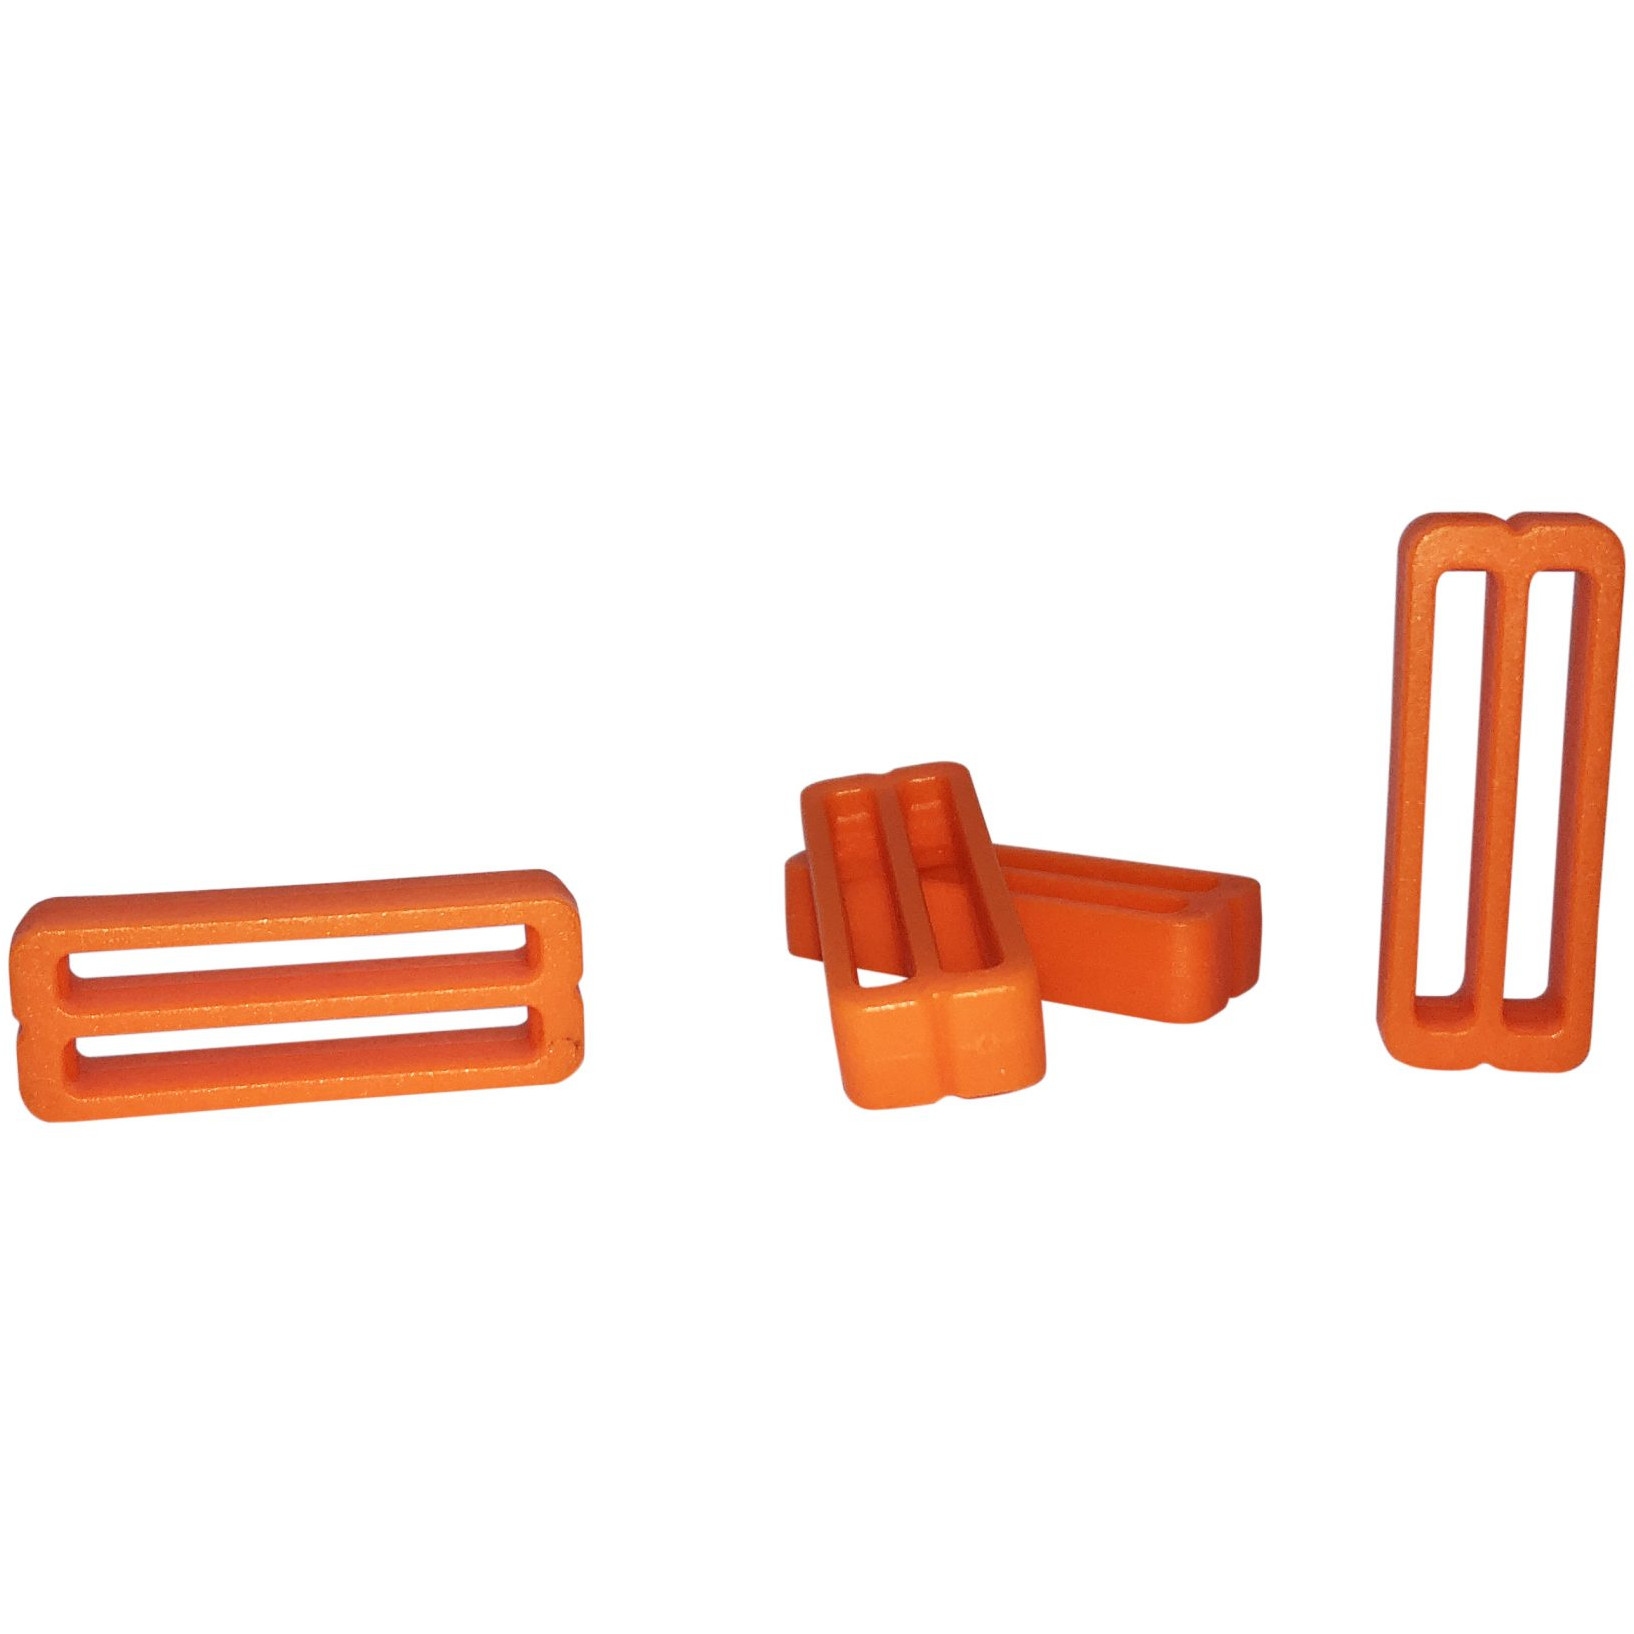 Bild von FixPlus Strapkeeper für 35 cm, 46cm & 66cm Straps - 4 Stück - orange